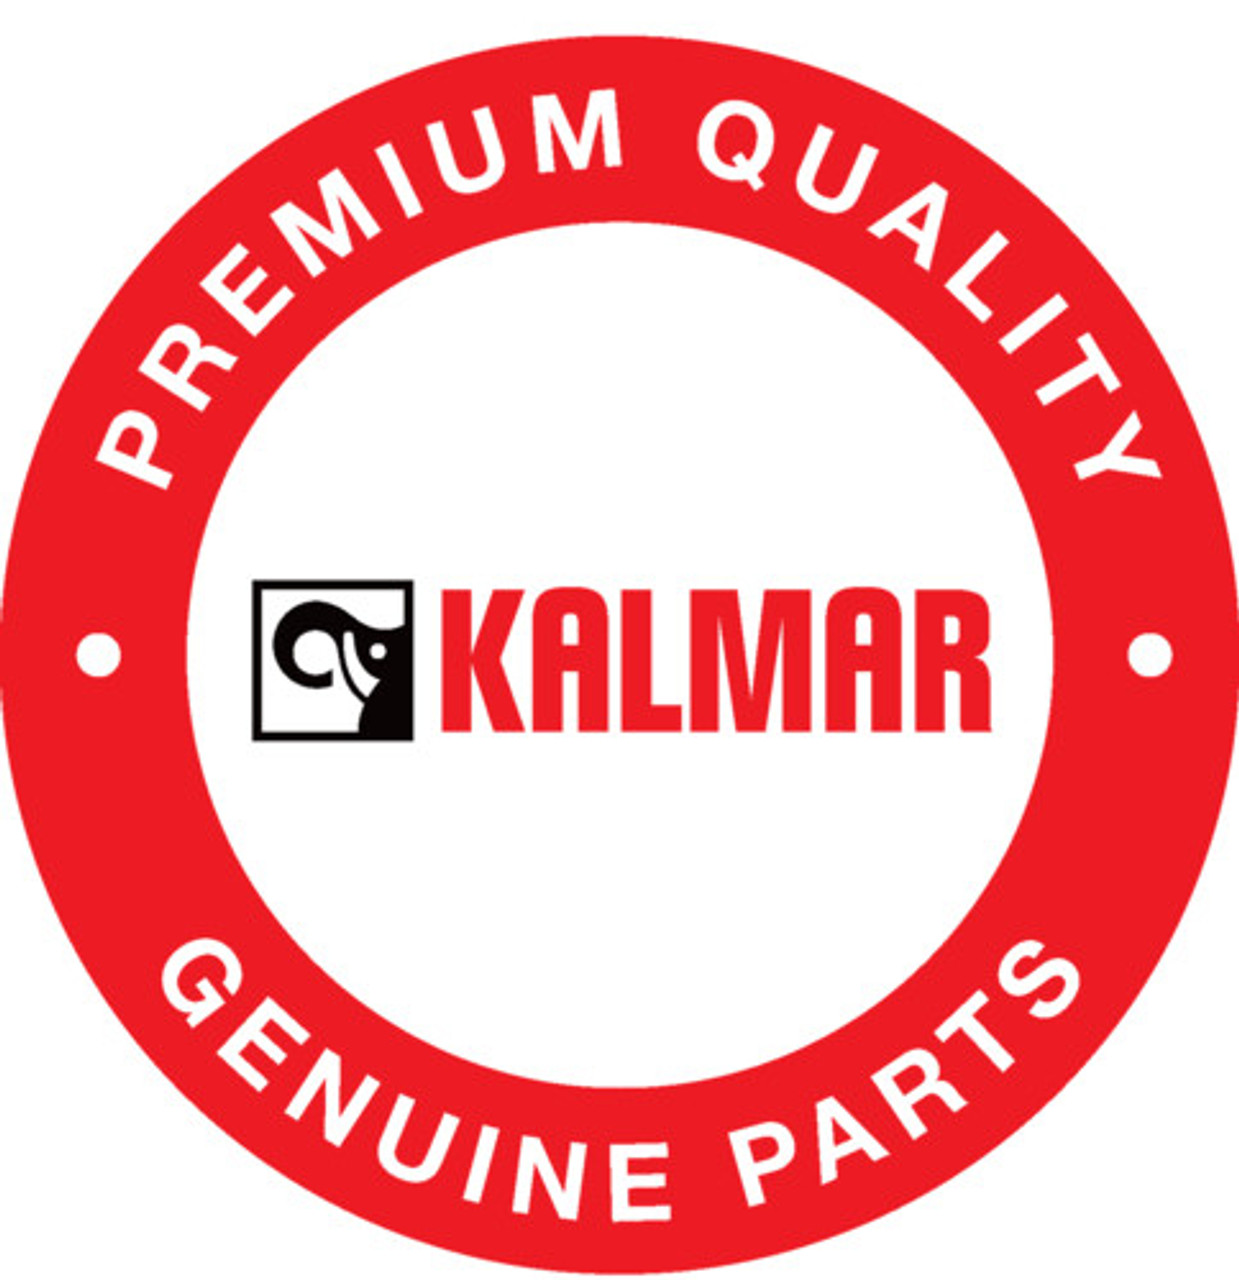 JP119907: Kalmar® Printed Circuit Board